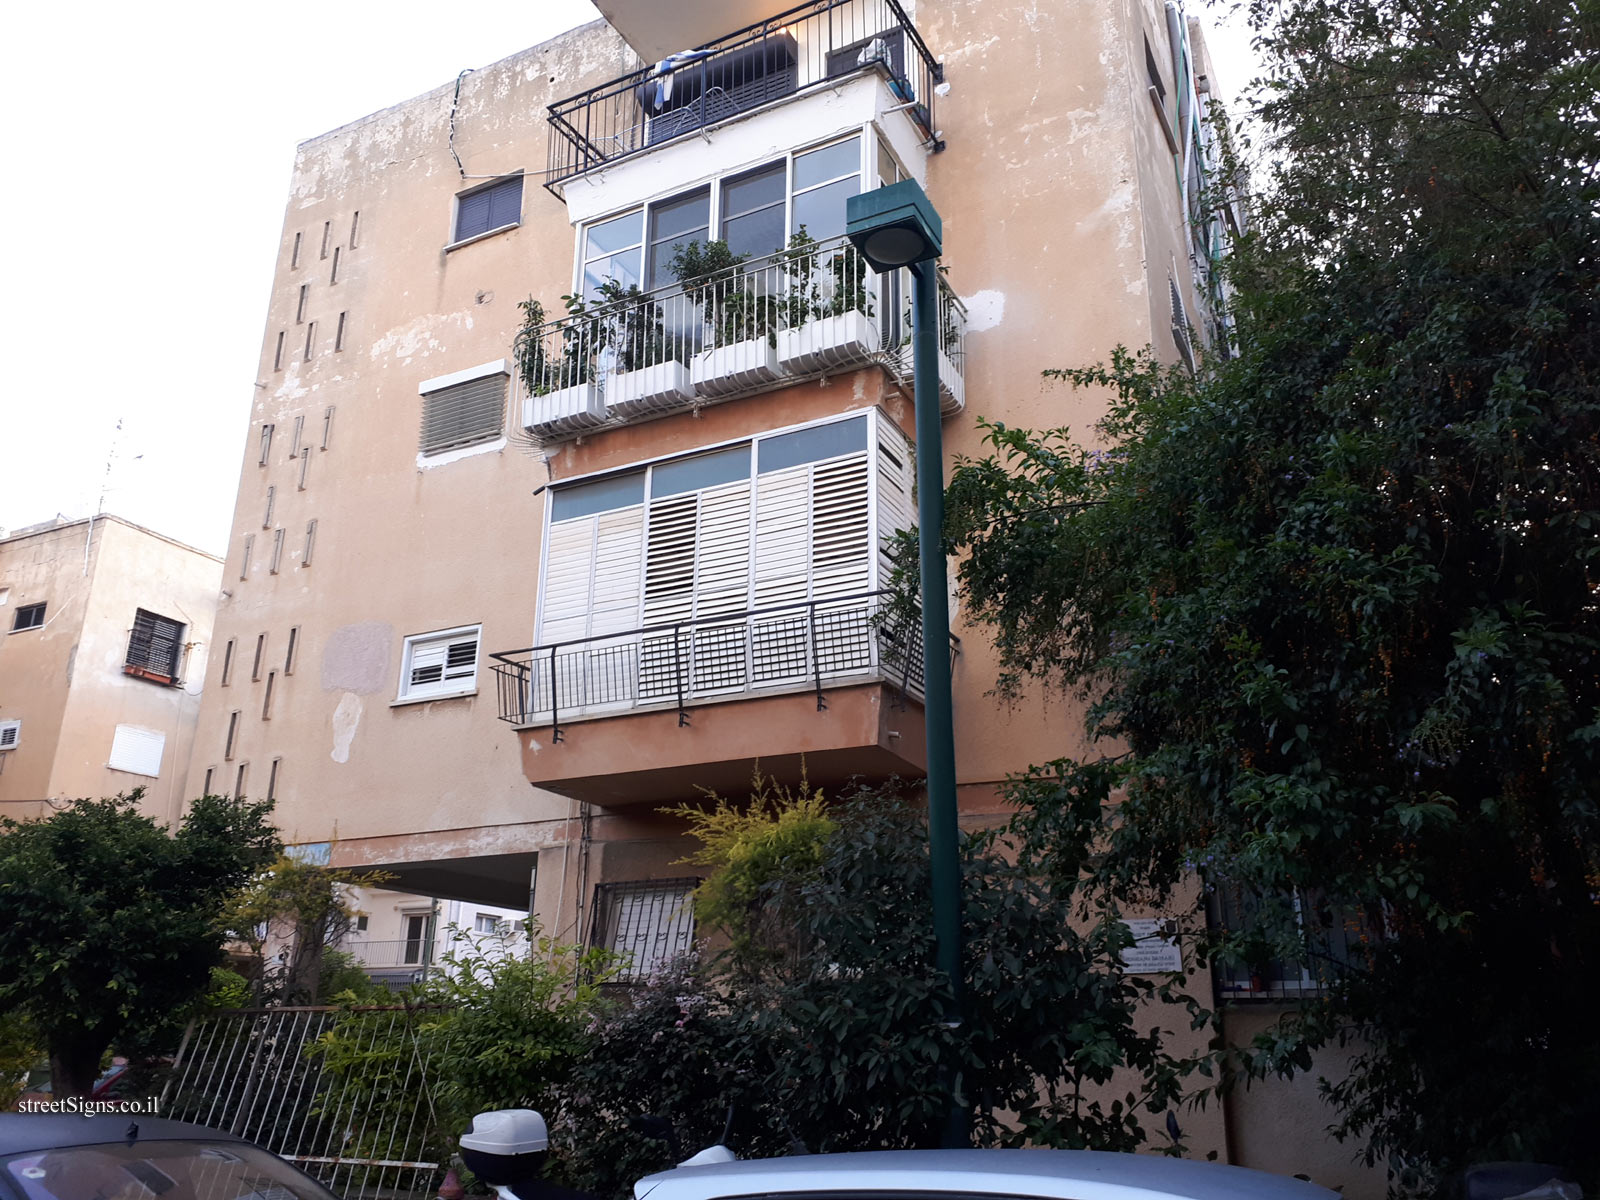 The house of Shoshana Damari - Klonimus St 16, Tel Aviv-Yafo